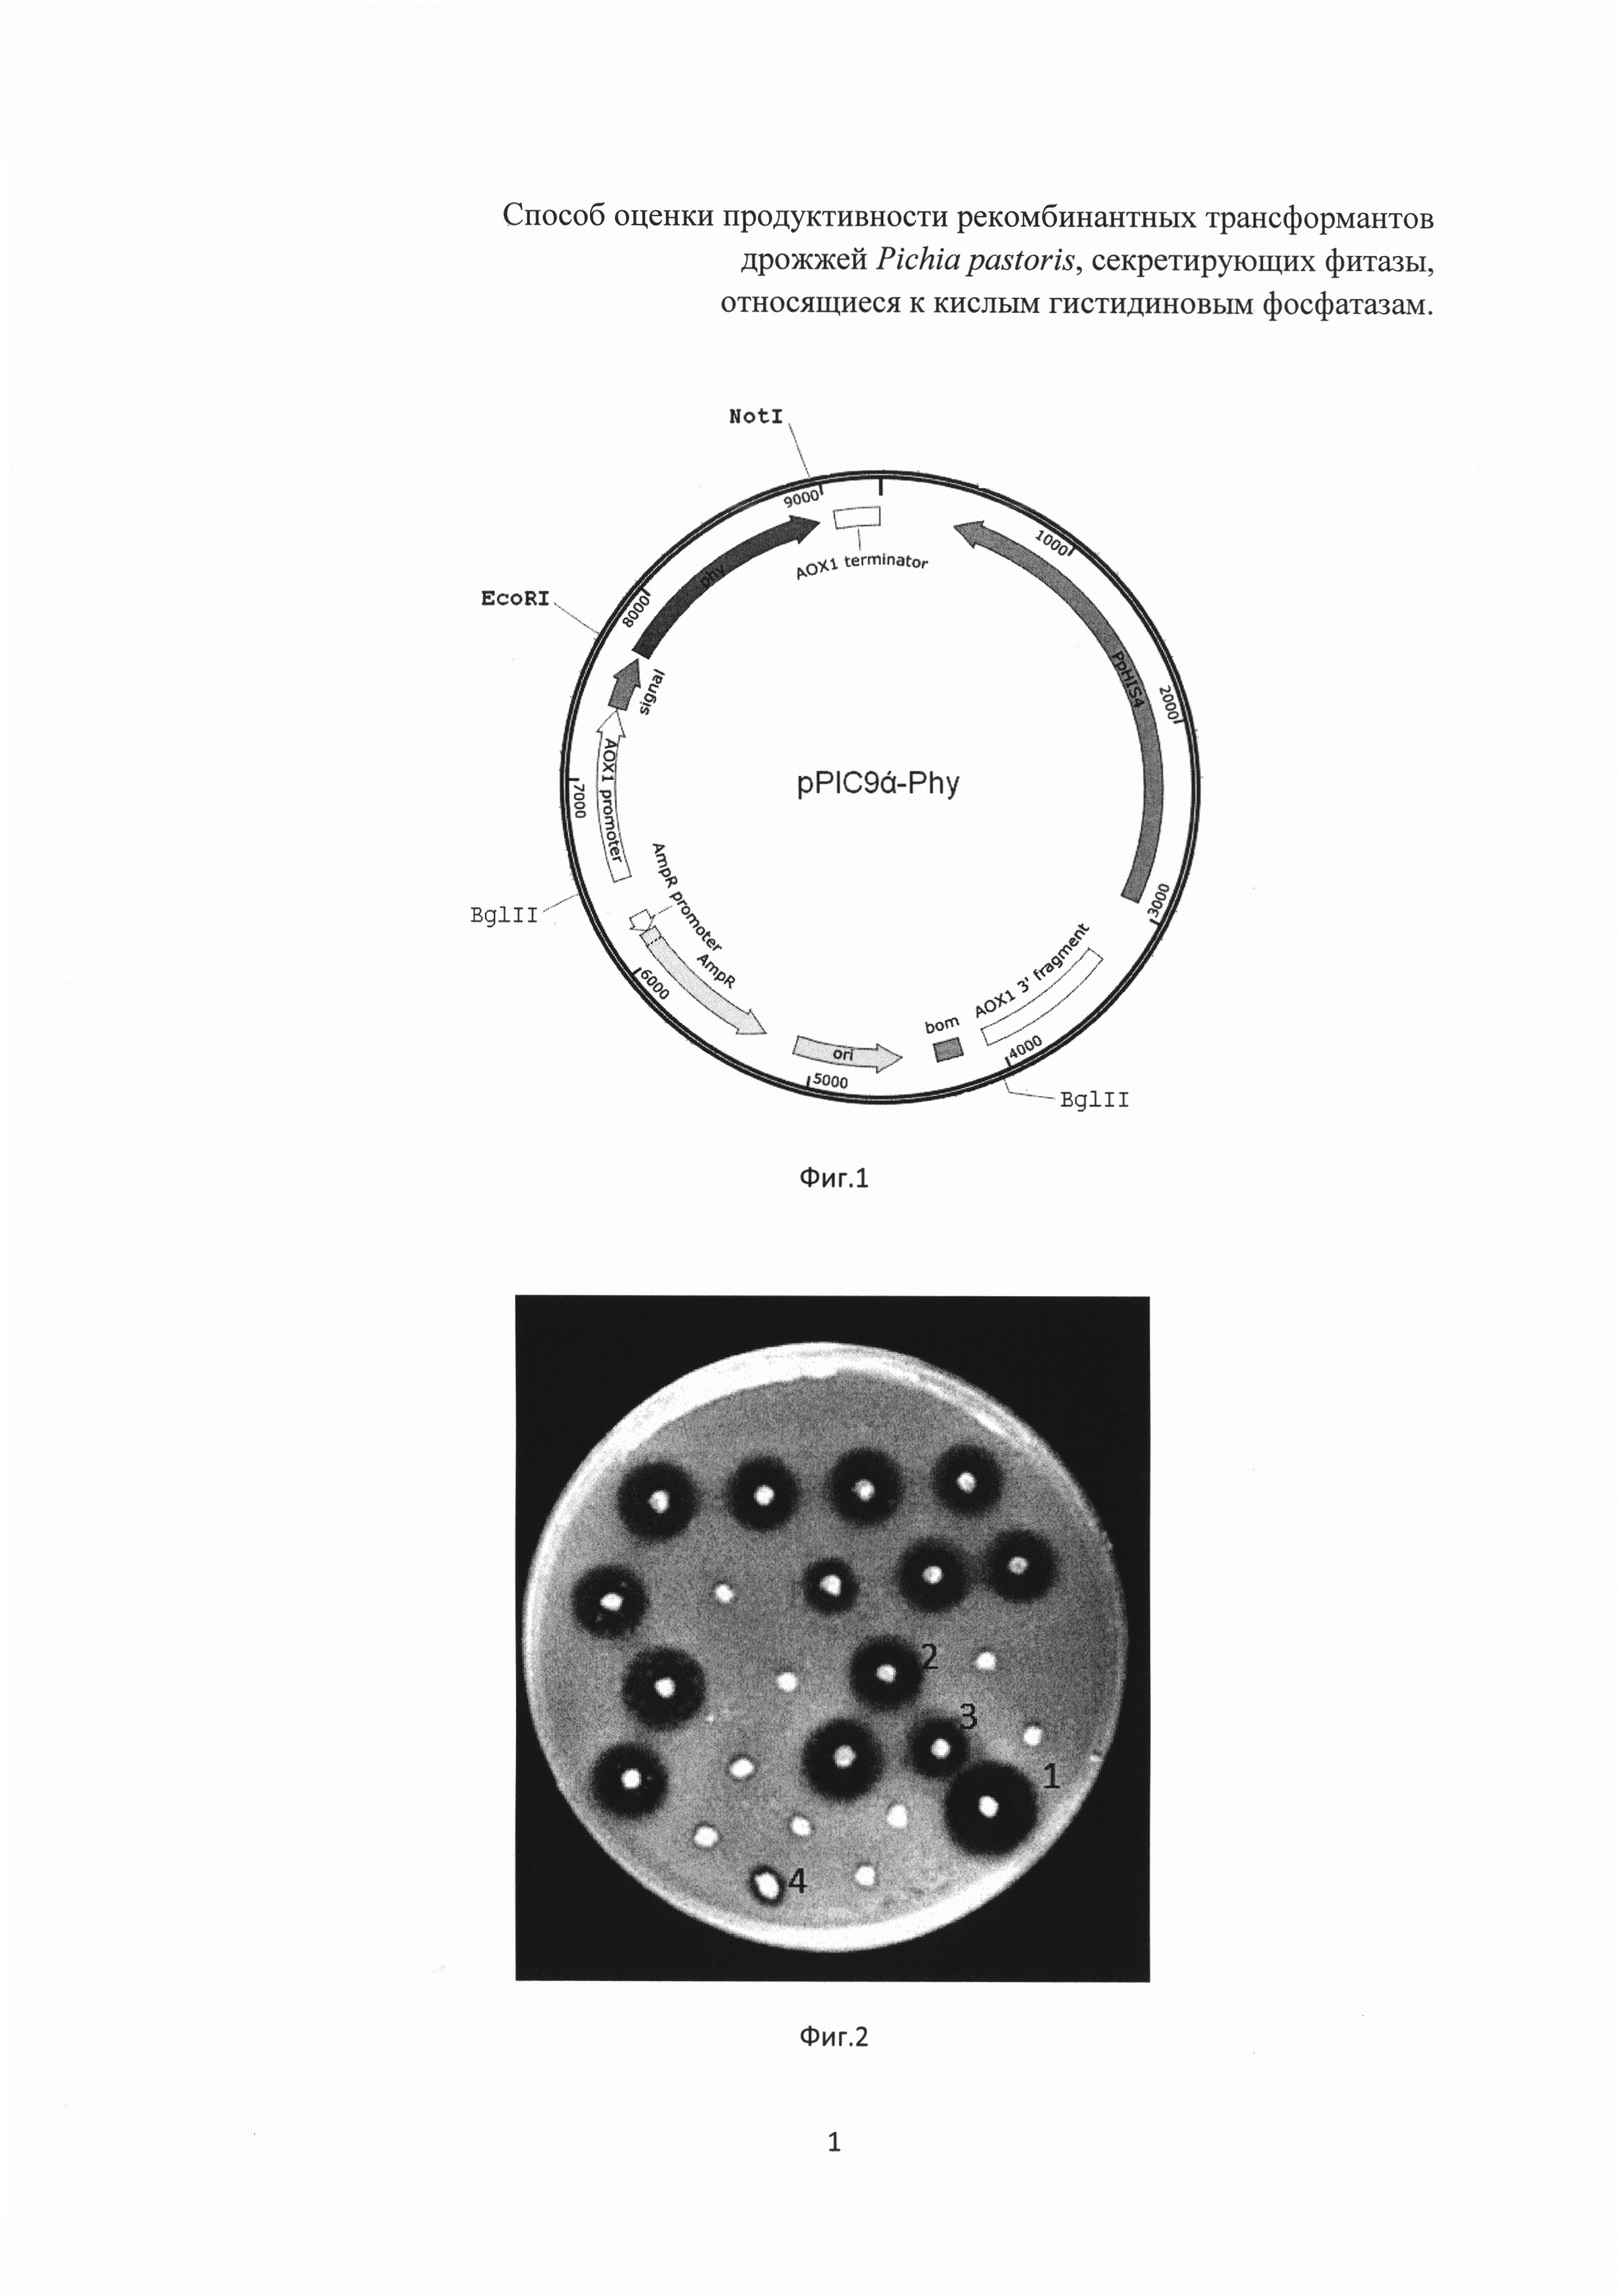 Способ оценки продуктивности рекомбинантных трансформантов дрожжей Pichia pastoris, секретирующих фитазы, относящиеся к кислым гистидиновым фосфатазам